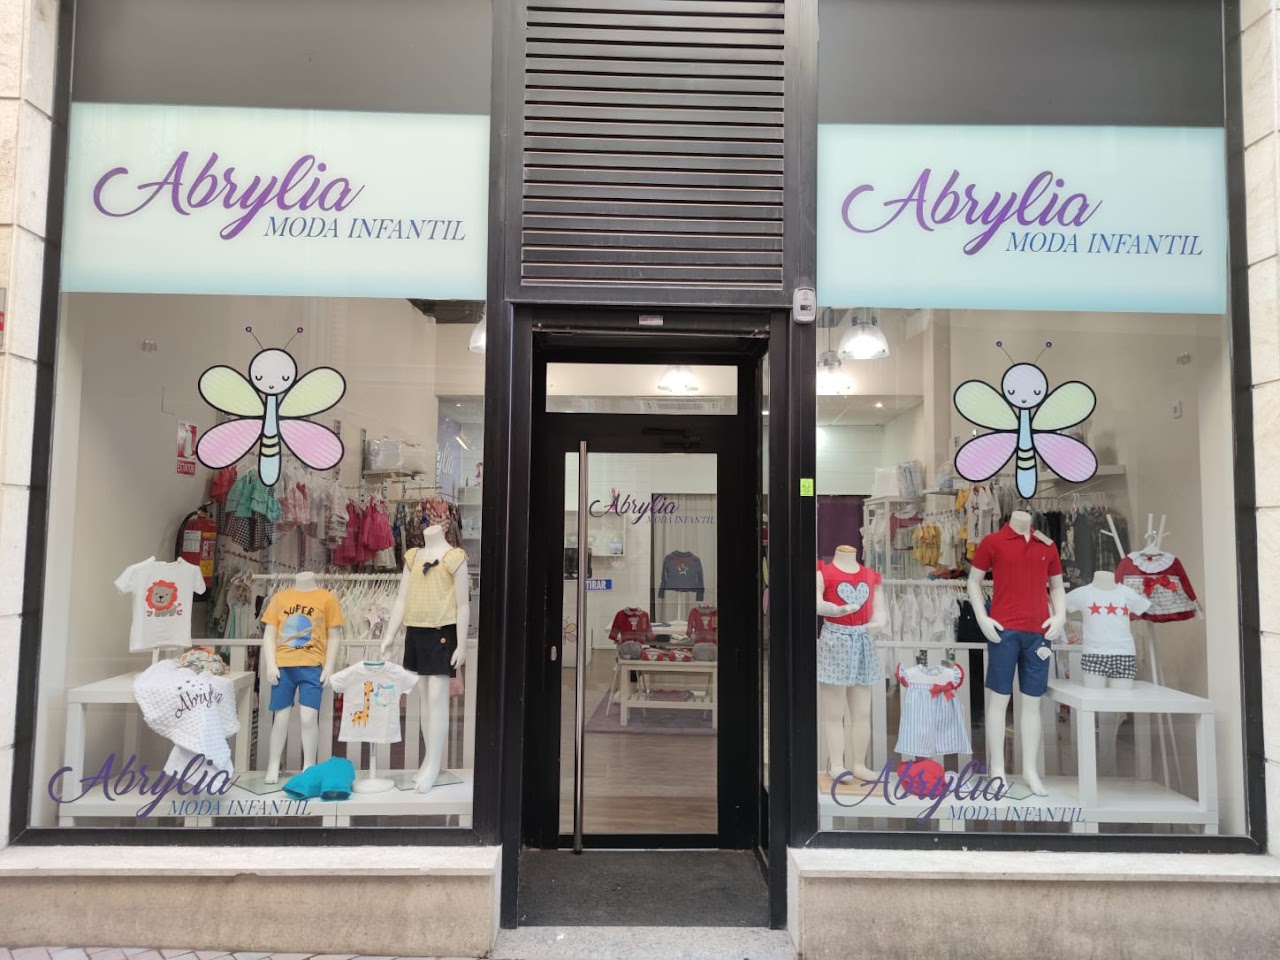 Comprar en Zamora - Abrylia moda infantil -  Benavente y los Valles